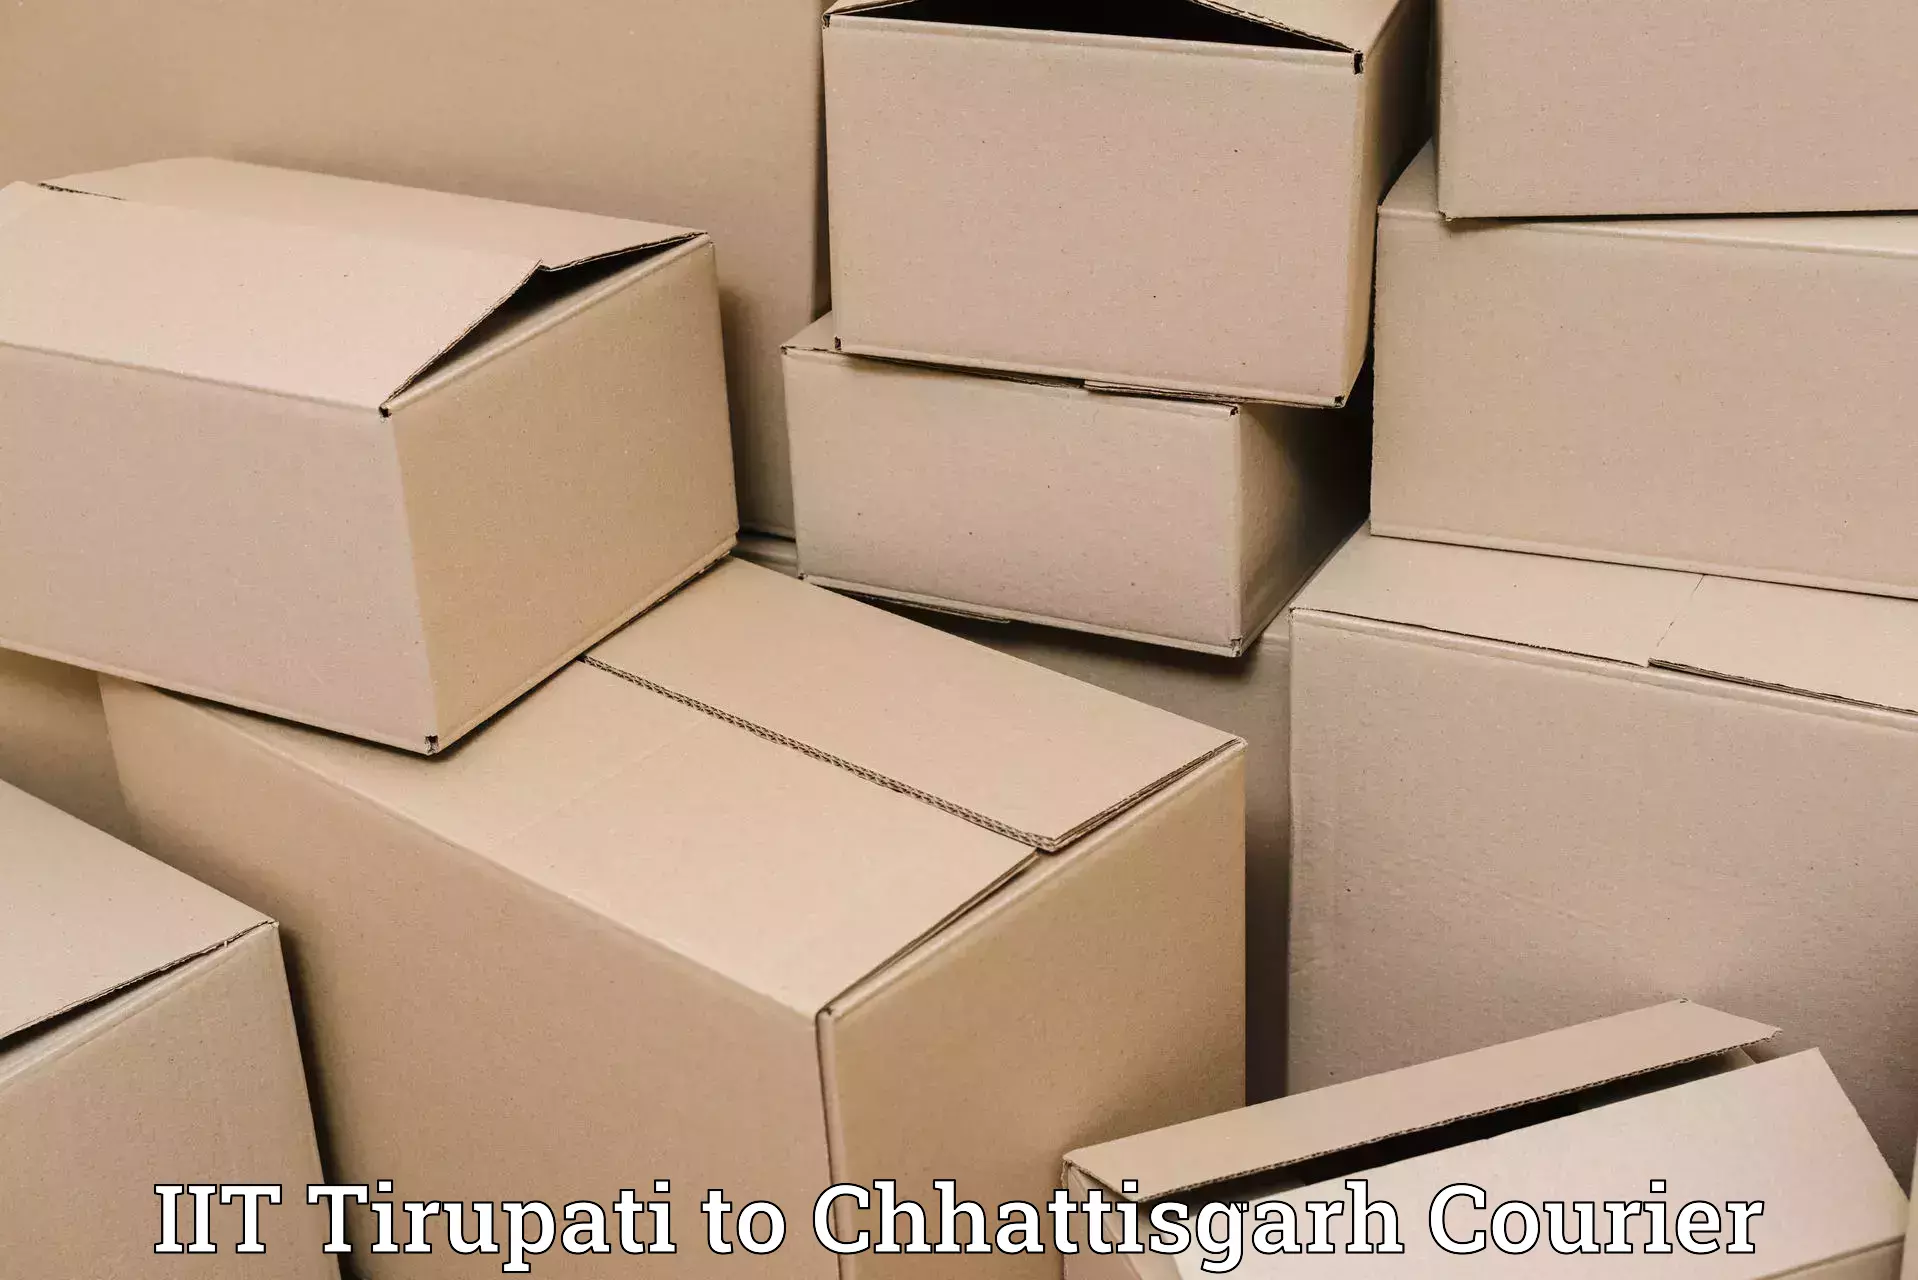 Courier service comparison in IIT Tirupati to Kharsia